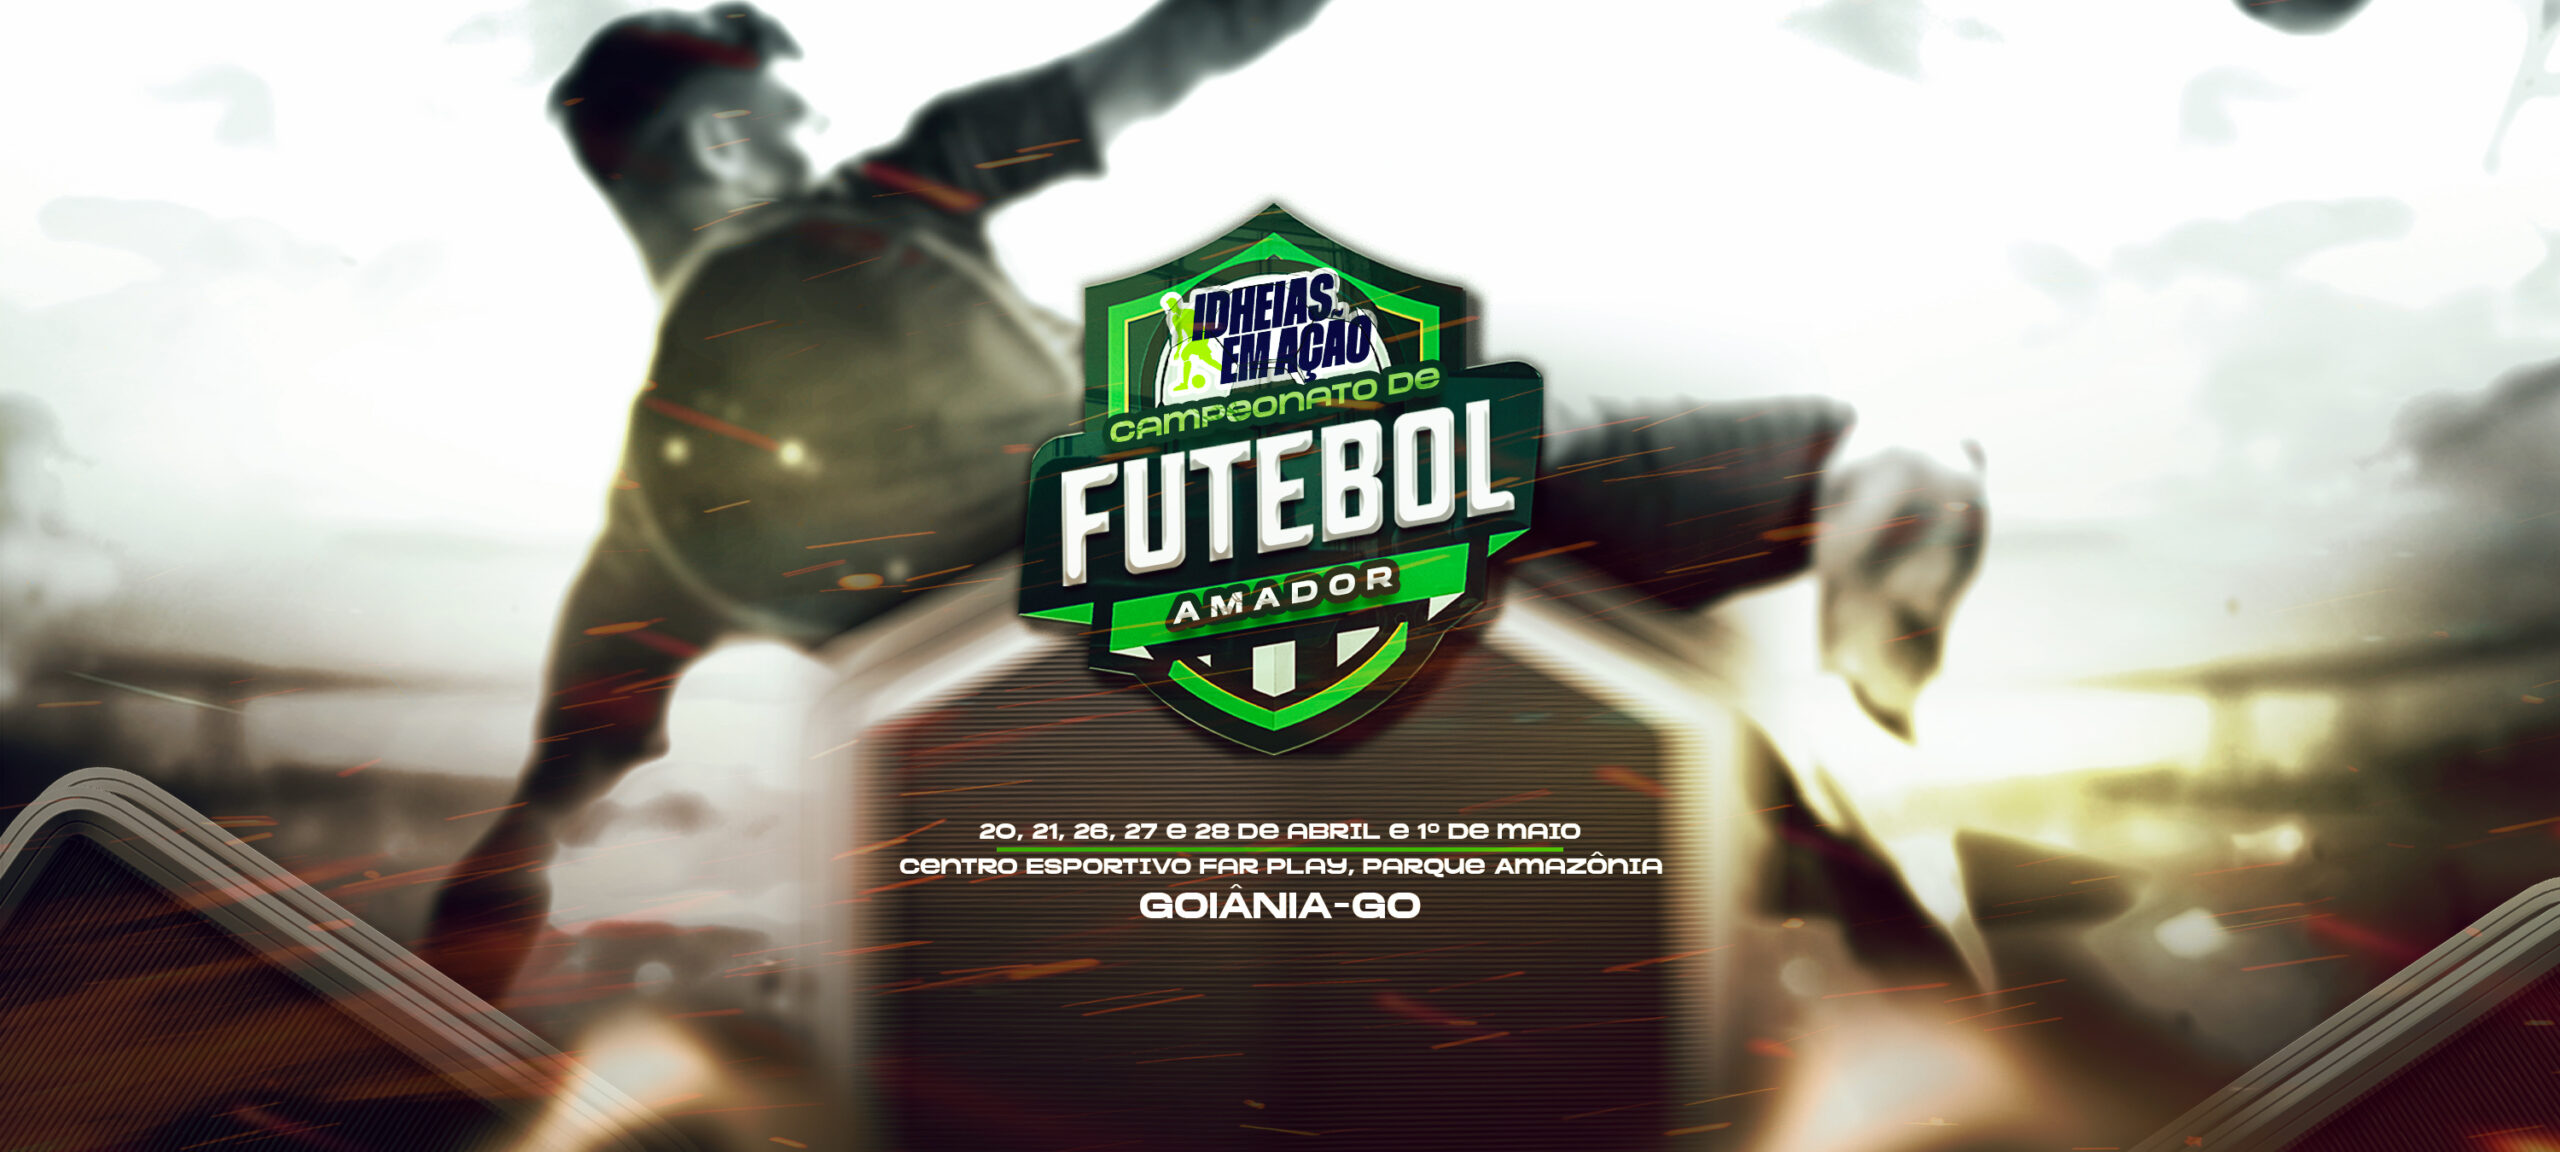 Inscrições abertas para o campeonato que vai movimentar o futebol amador em Goiânia